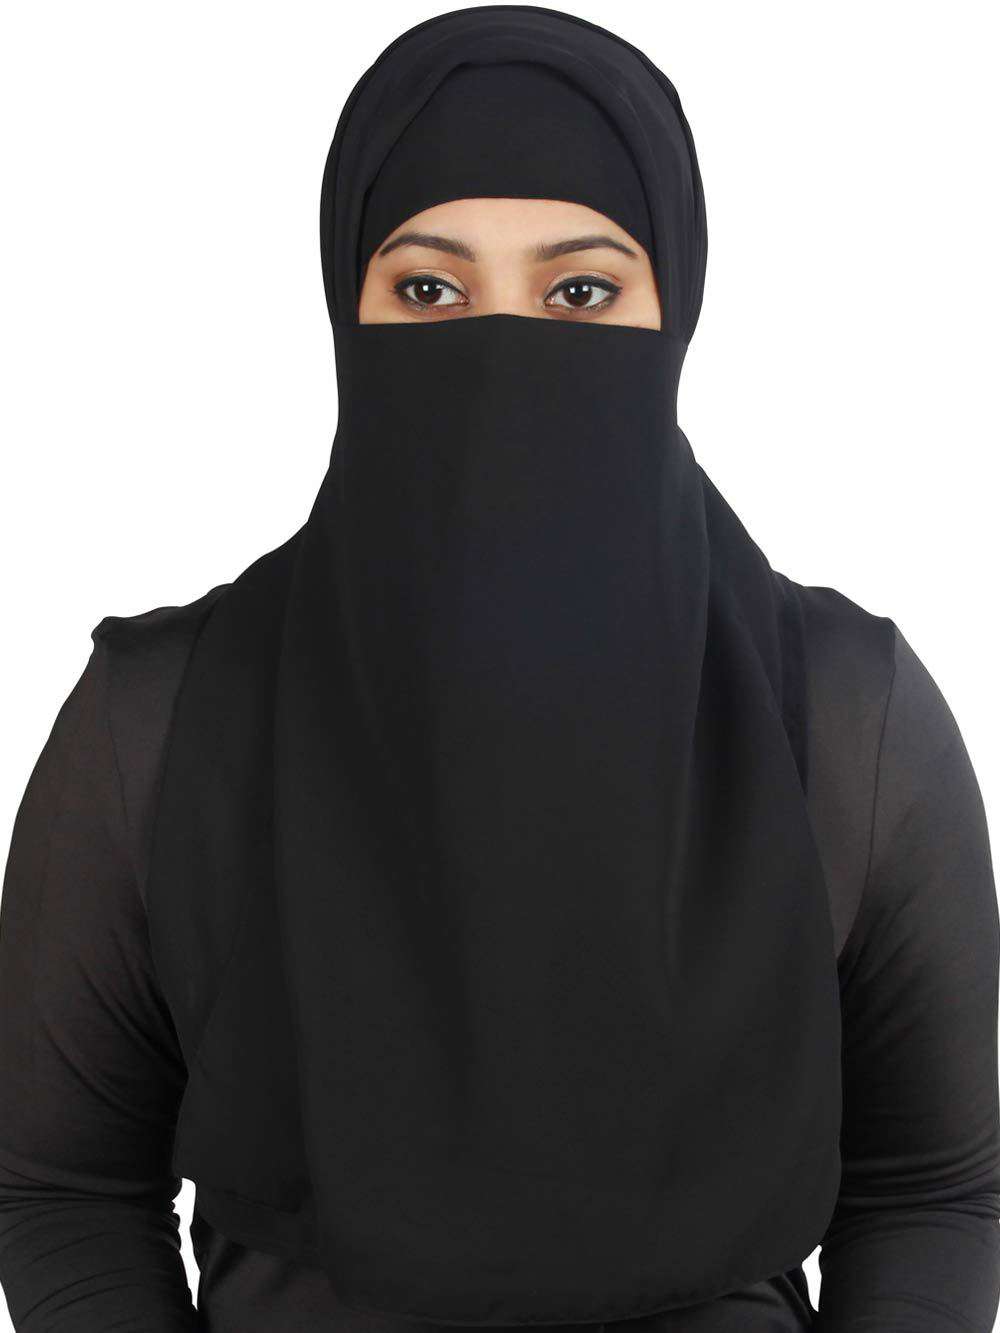 hijab wife black man